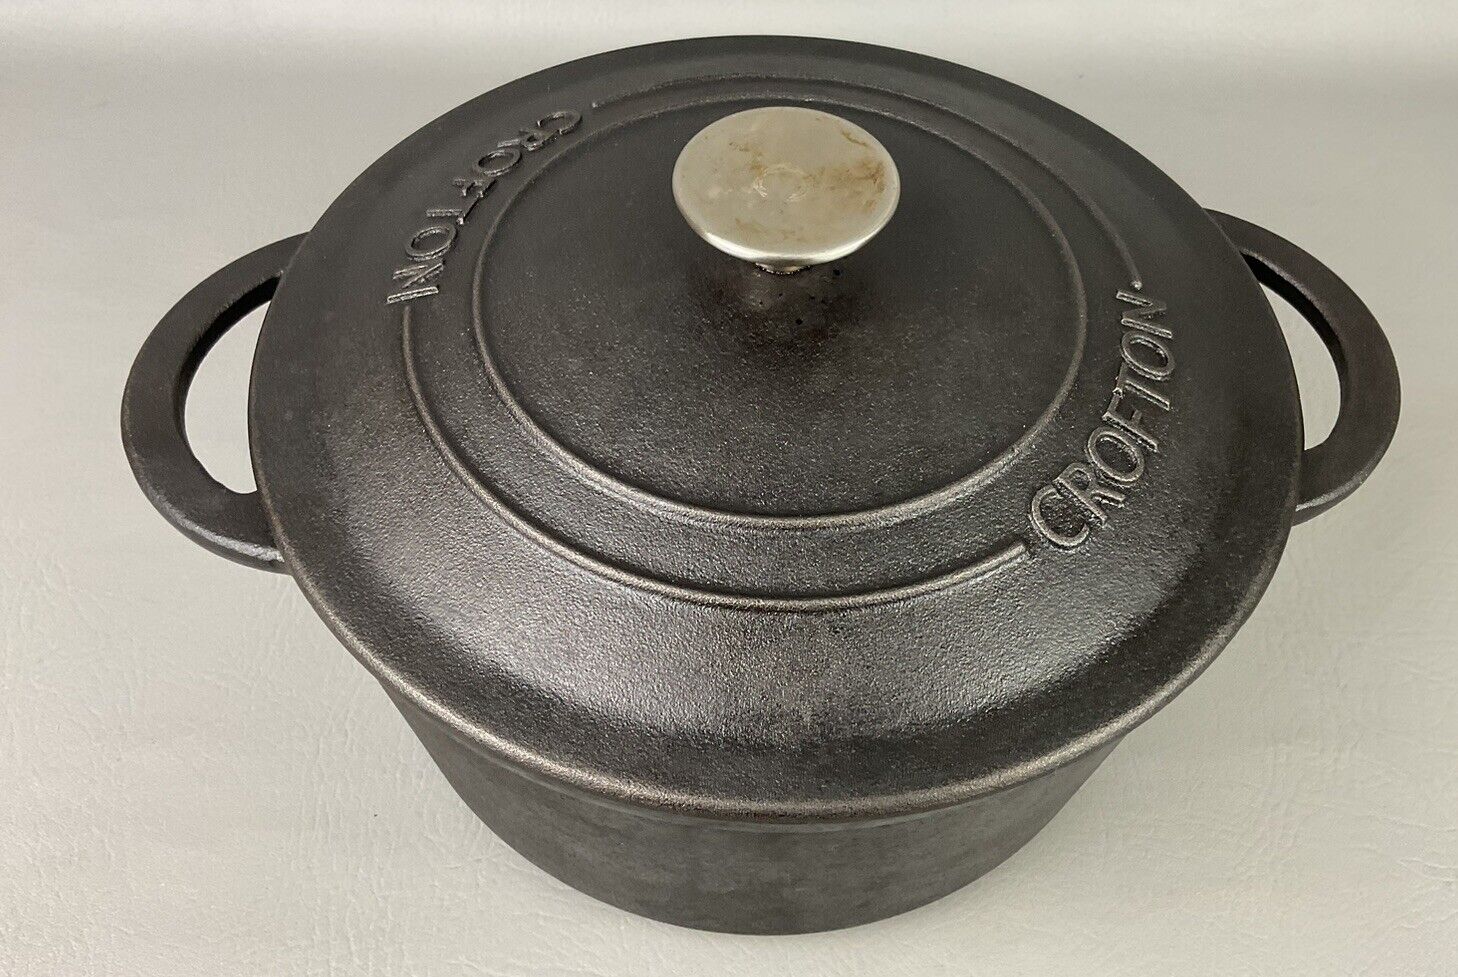 Crofton Large 5.5 QuartCast Iron Dutch Oven Pot with Lid & Handles